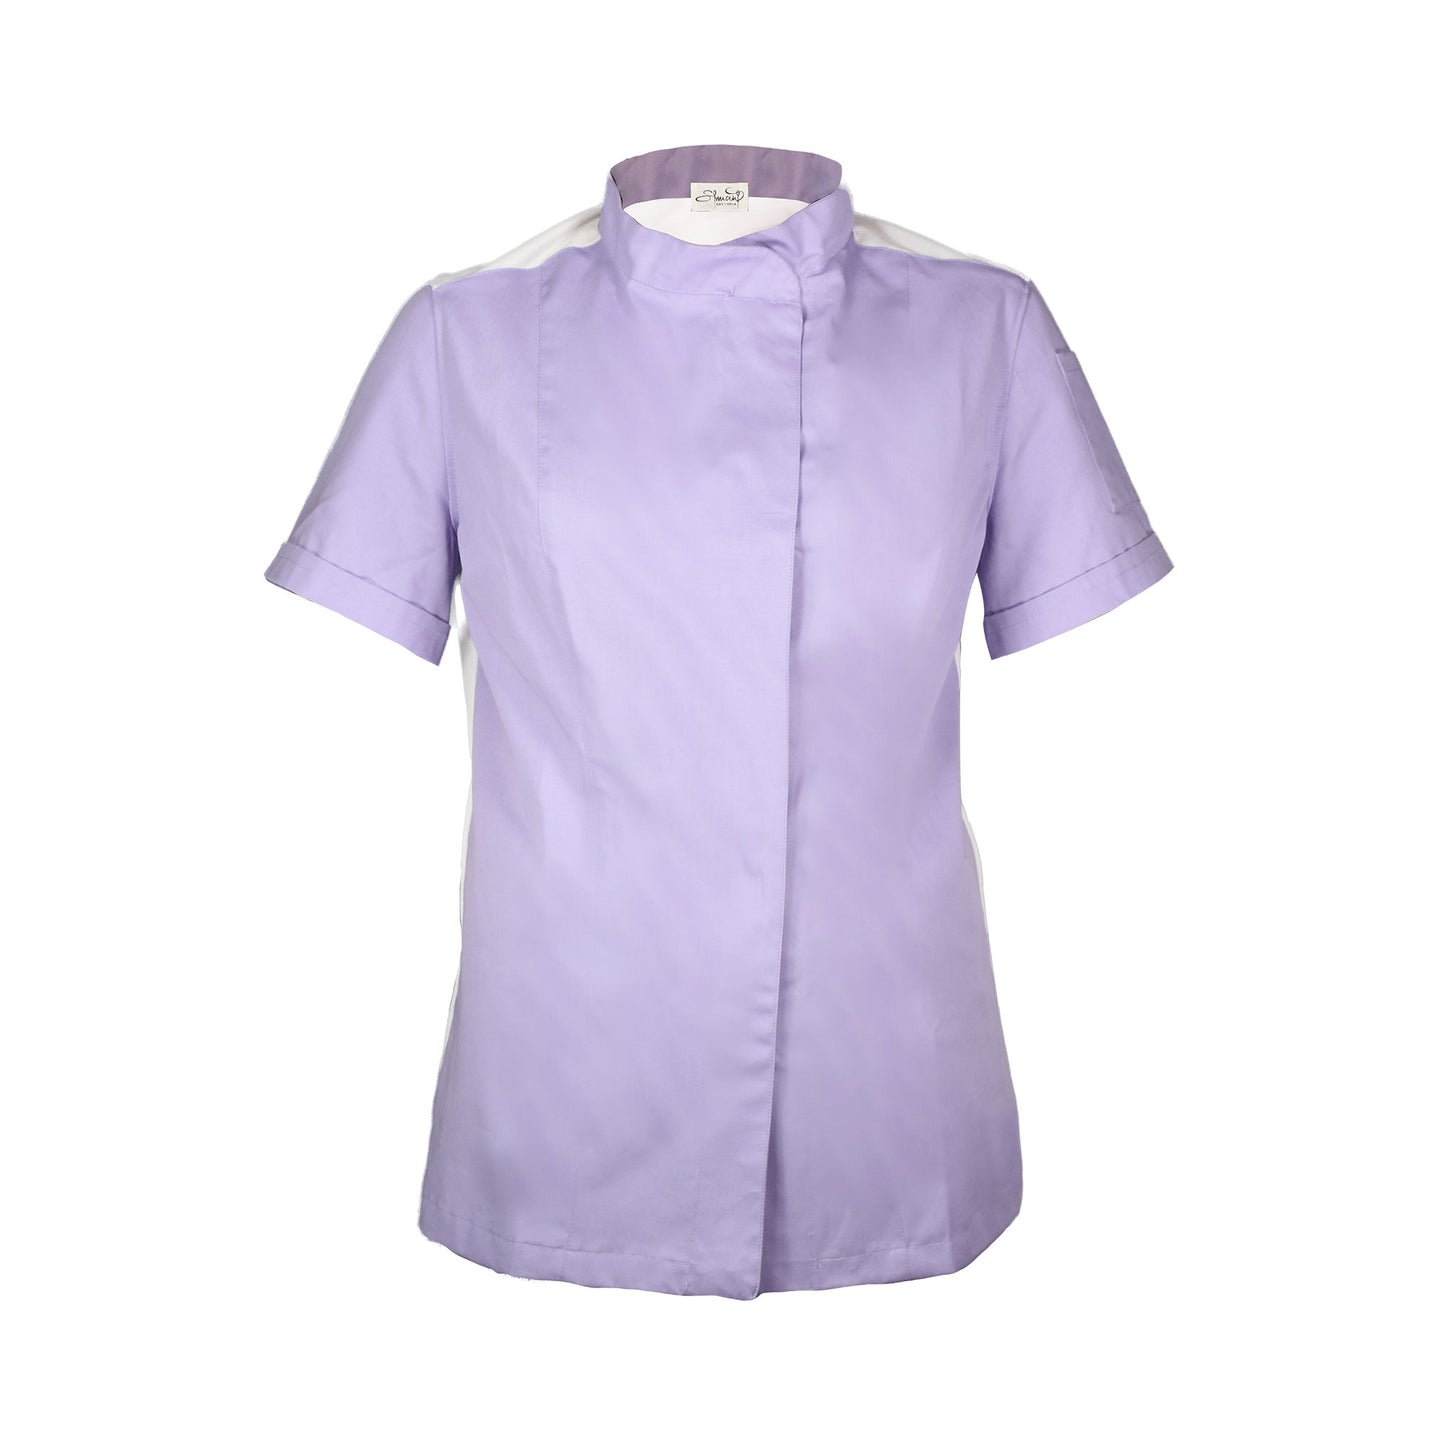 LAVANDA- Short sleeve shirt